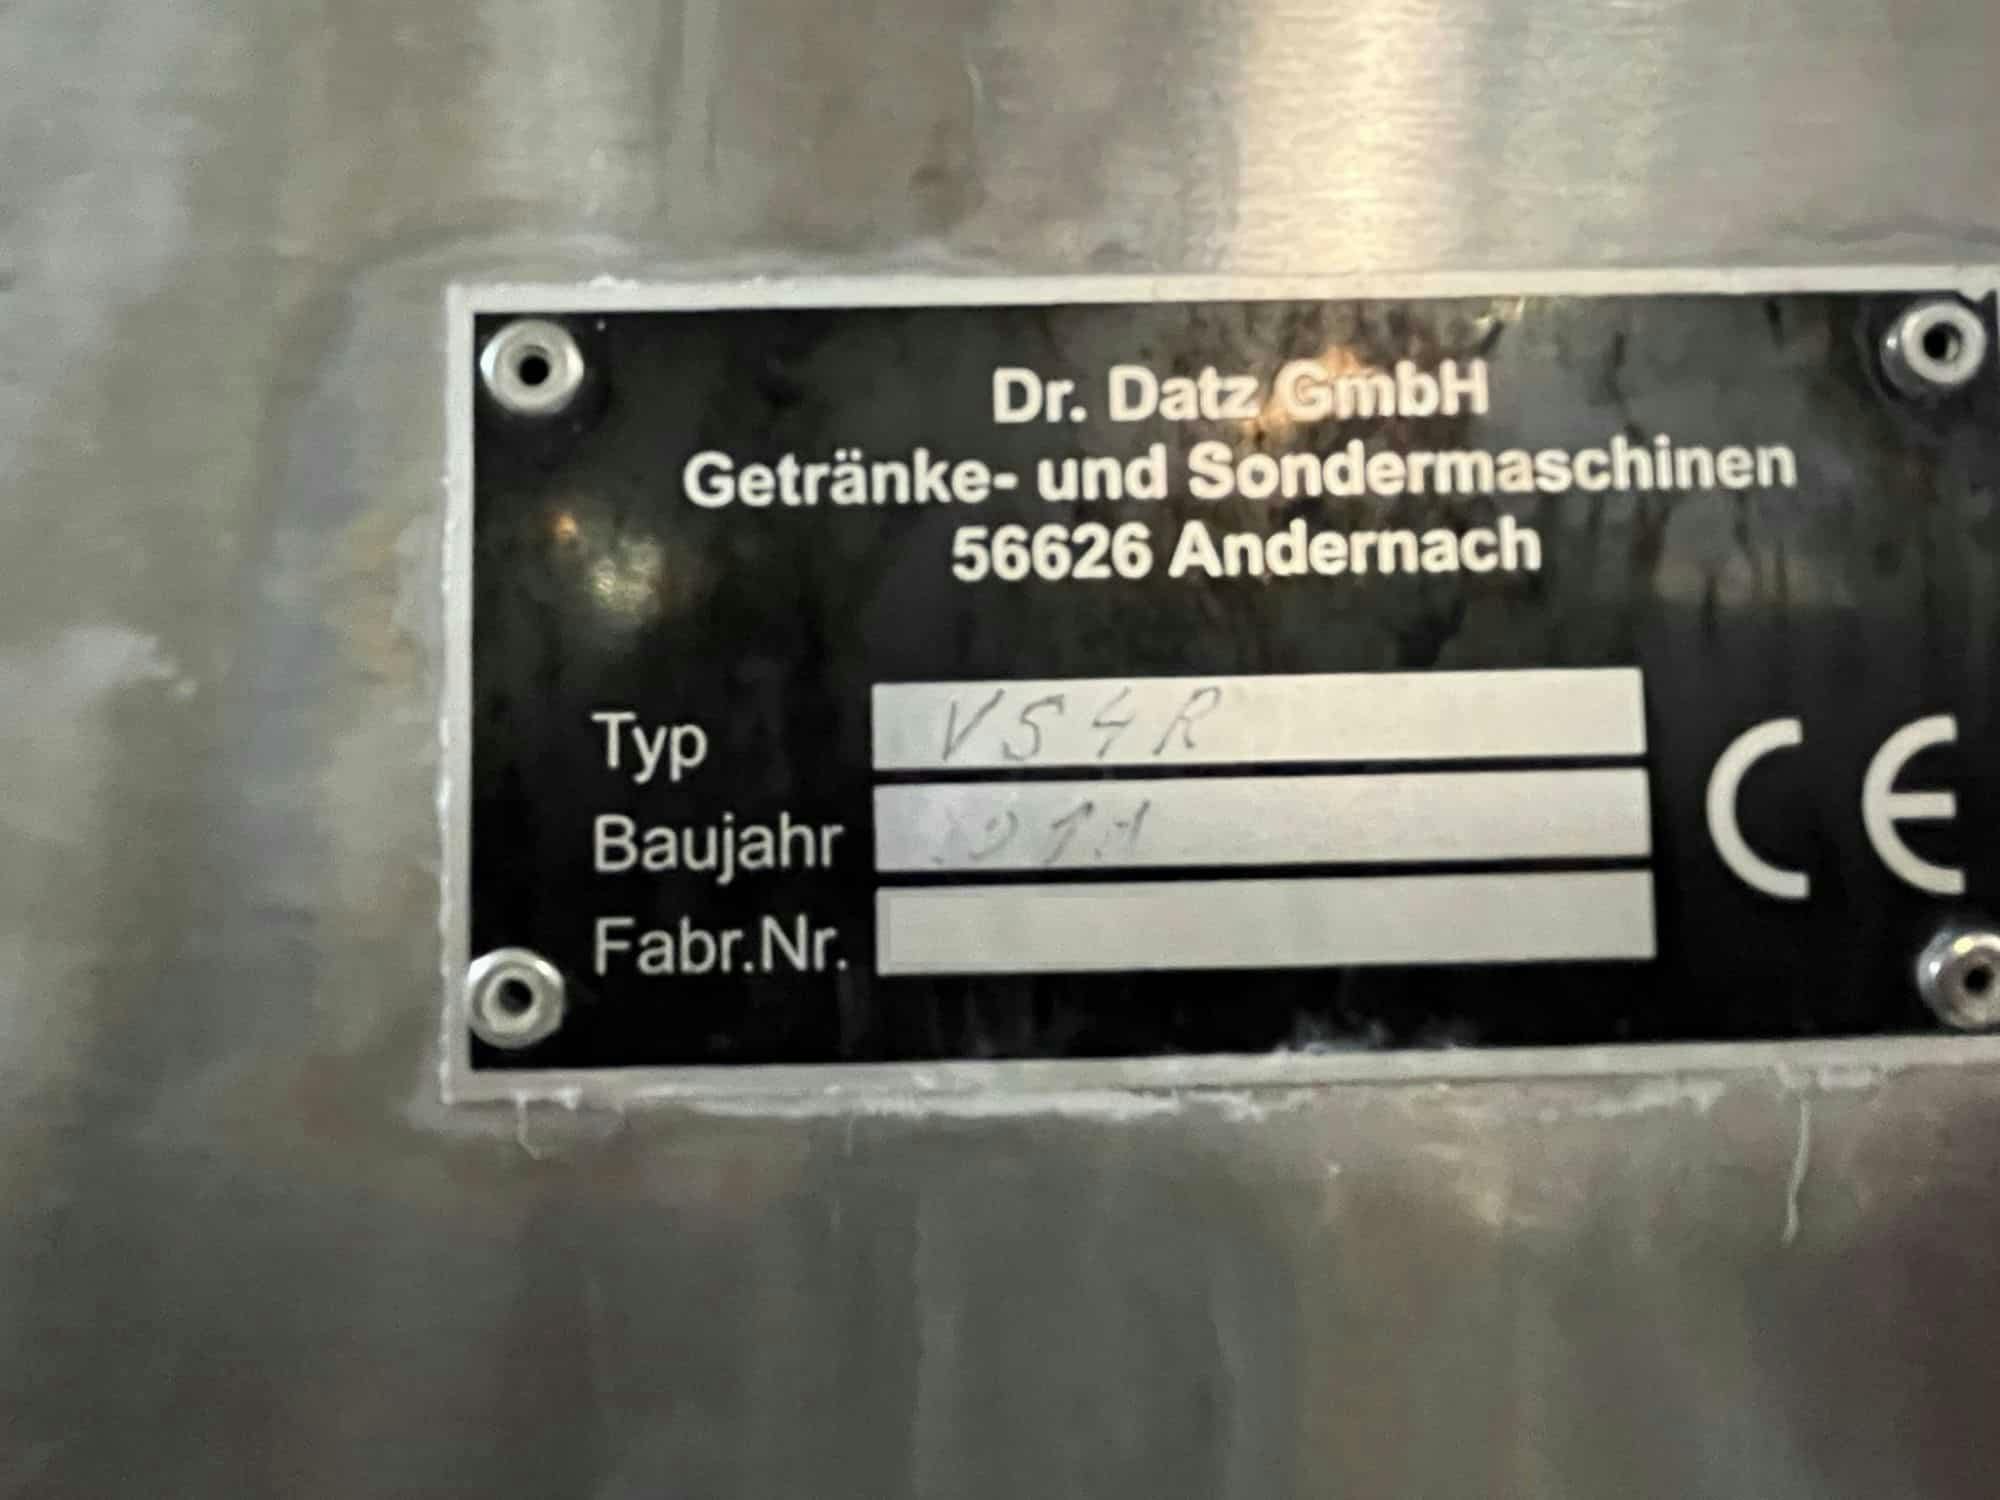 Nameplate of Dr. Datz GmbH Getränke- und Sondermaschinenbau VS4R